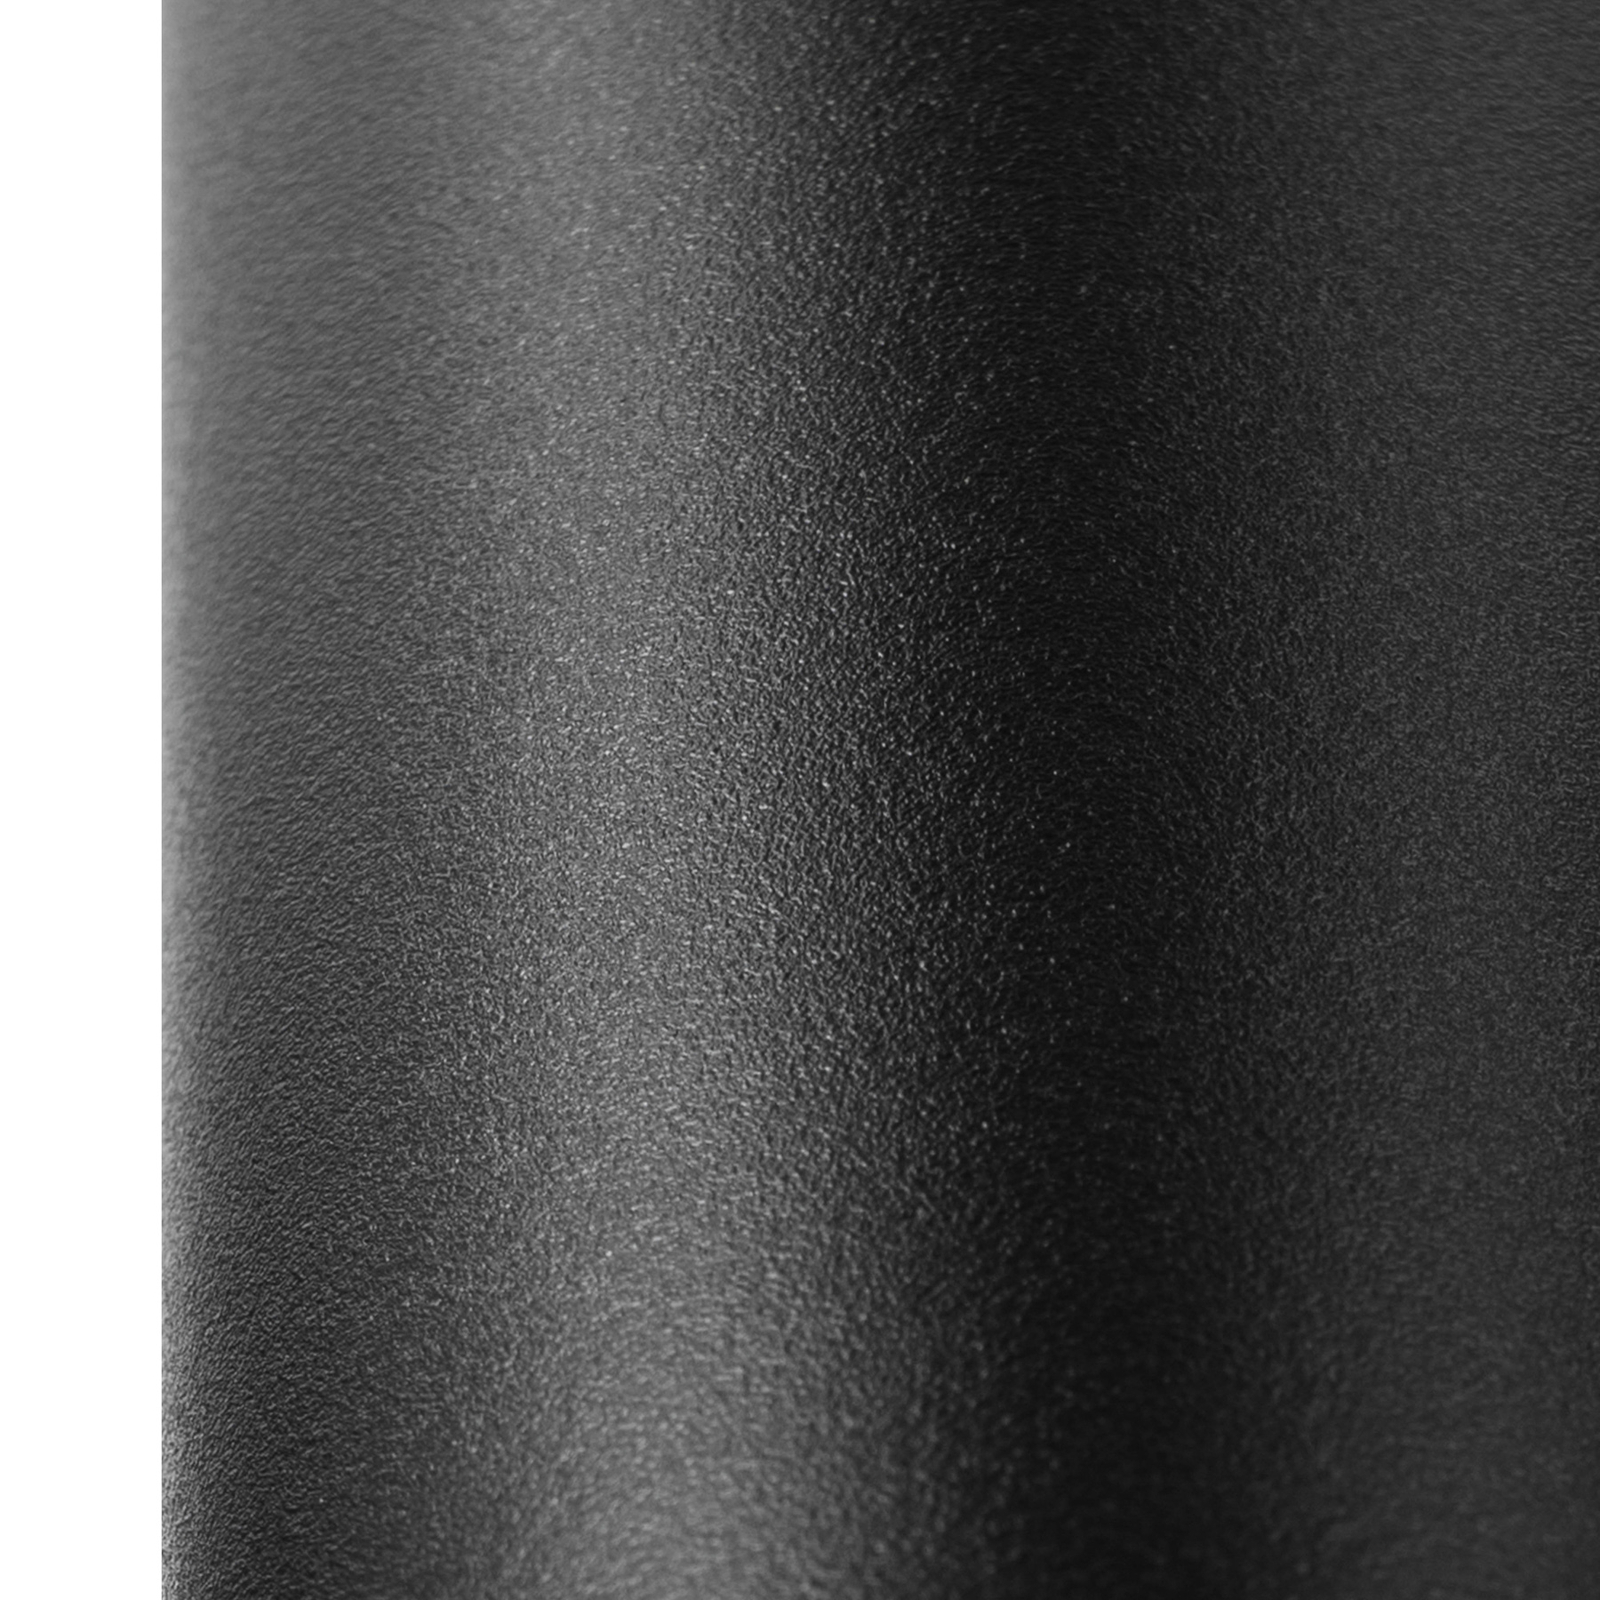 Arcchio Ejona track hanglamp zwart E27 4/15cm